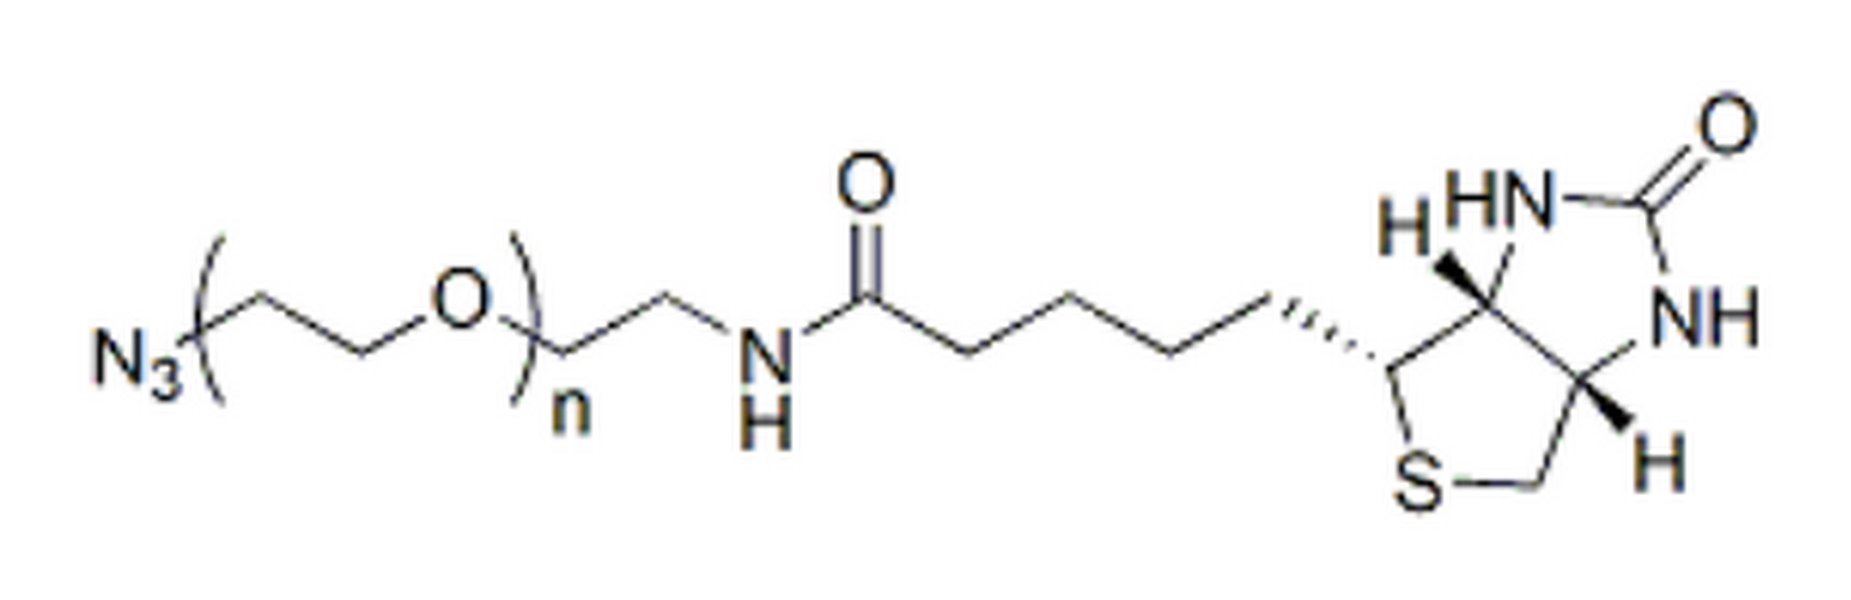 Biotin-PEG-azide, MW 10K